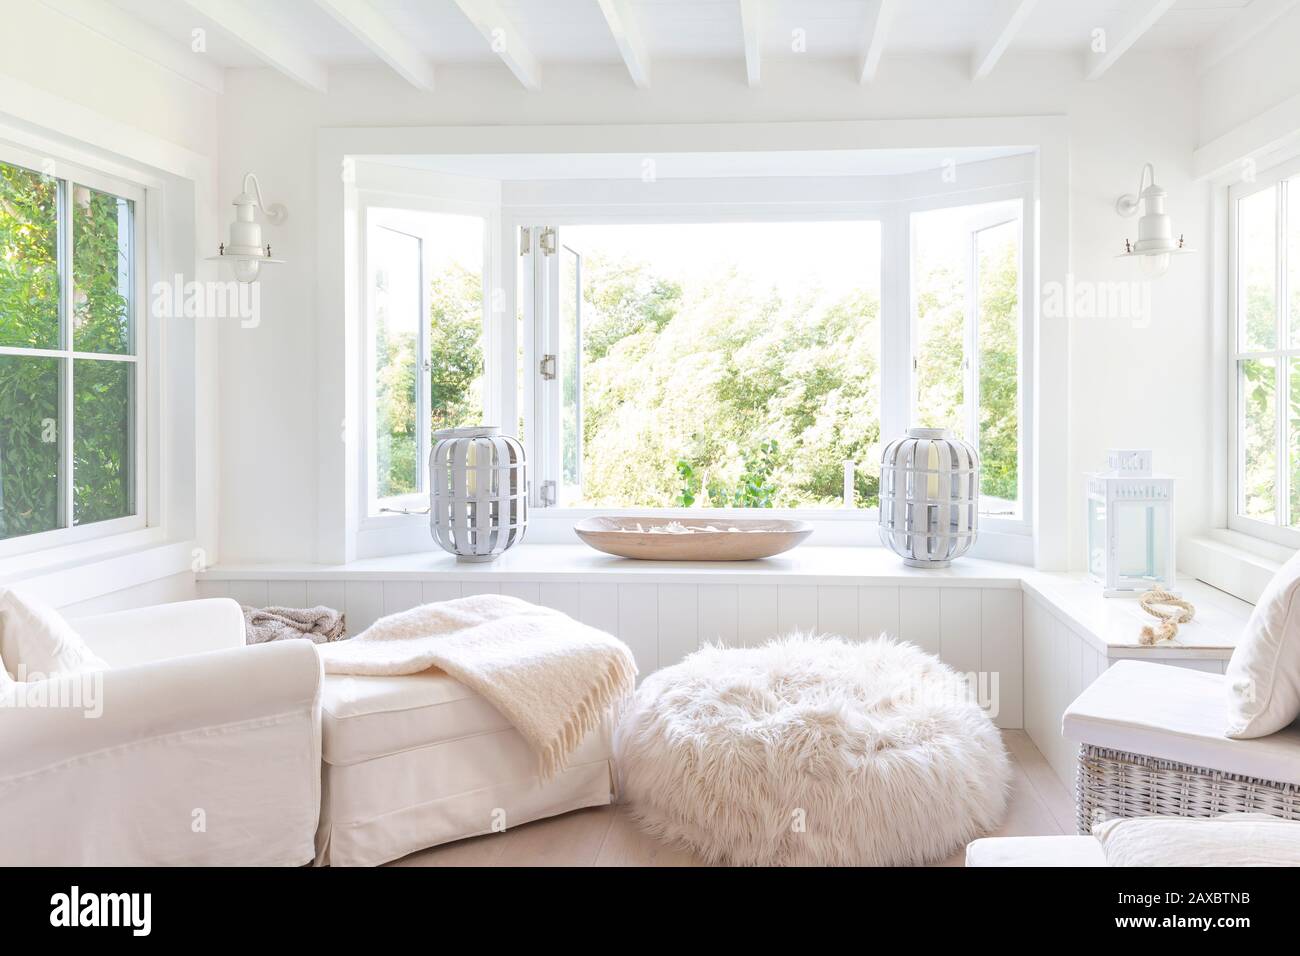 White home showcase sitting area with windows open to garden Stock Photo